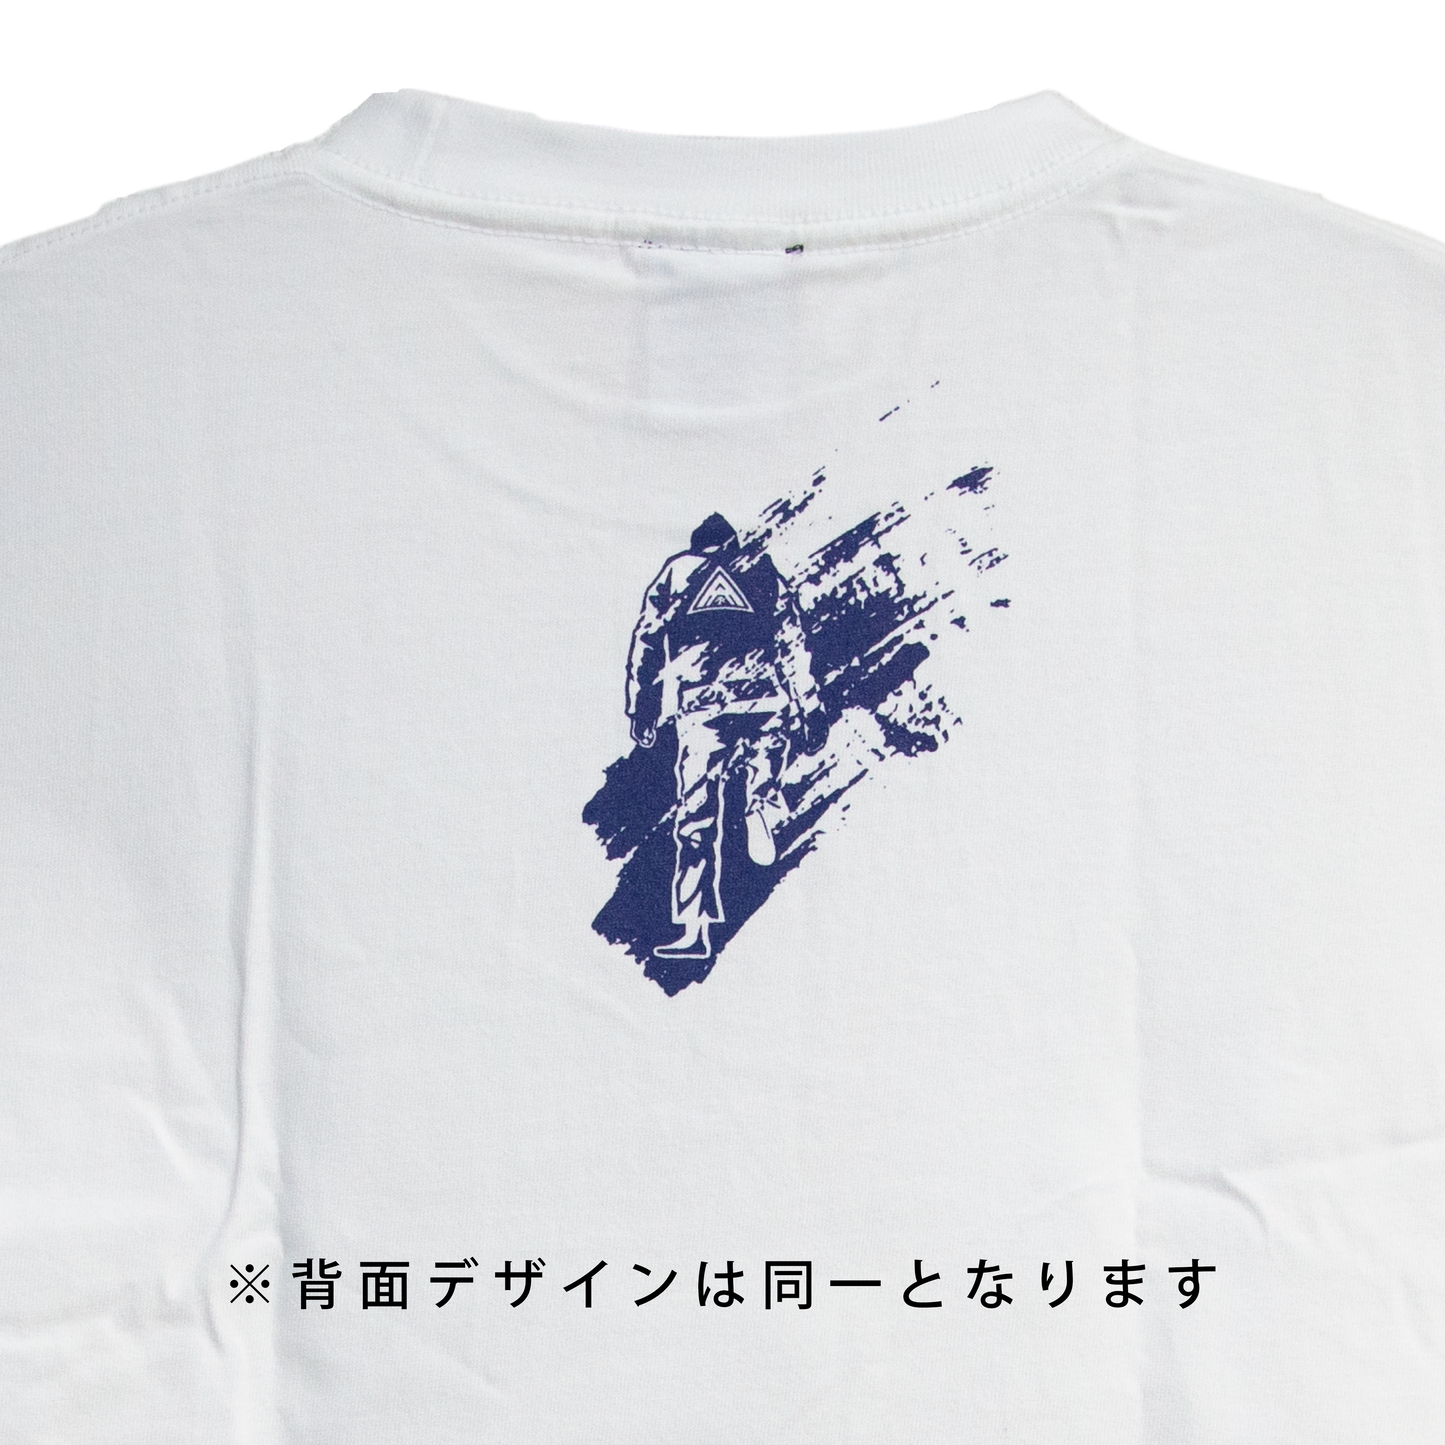 ホベルト・サトシ・ソウザ Tシャツ Type3